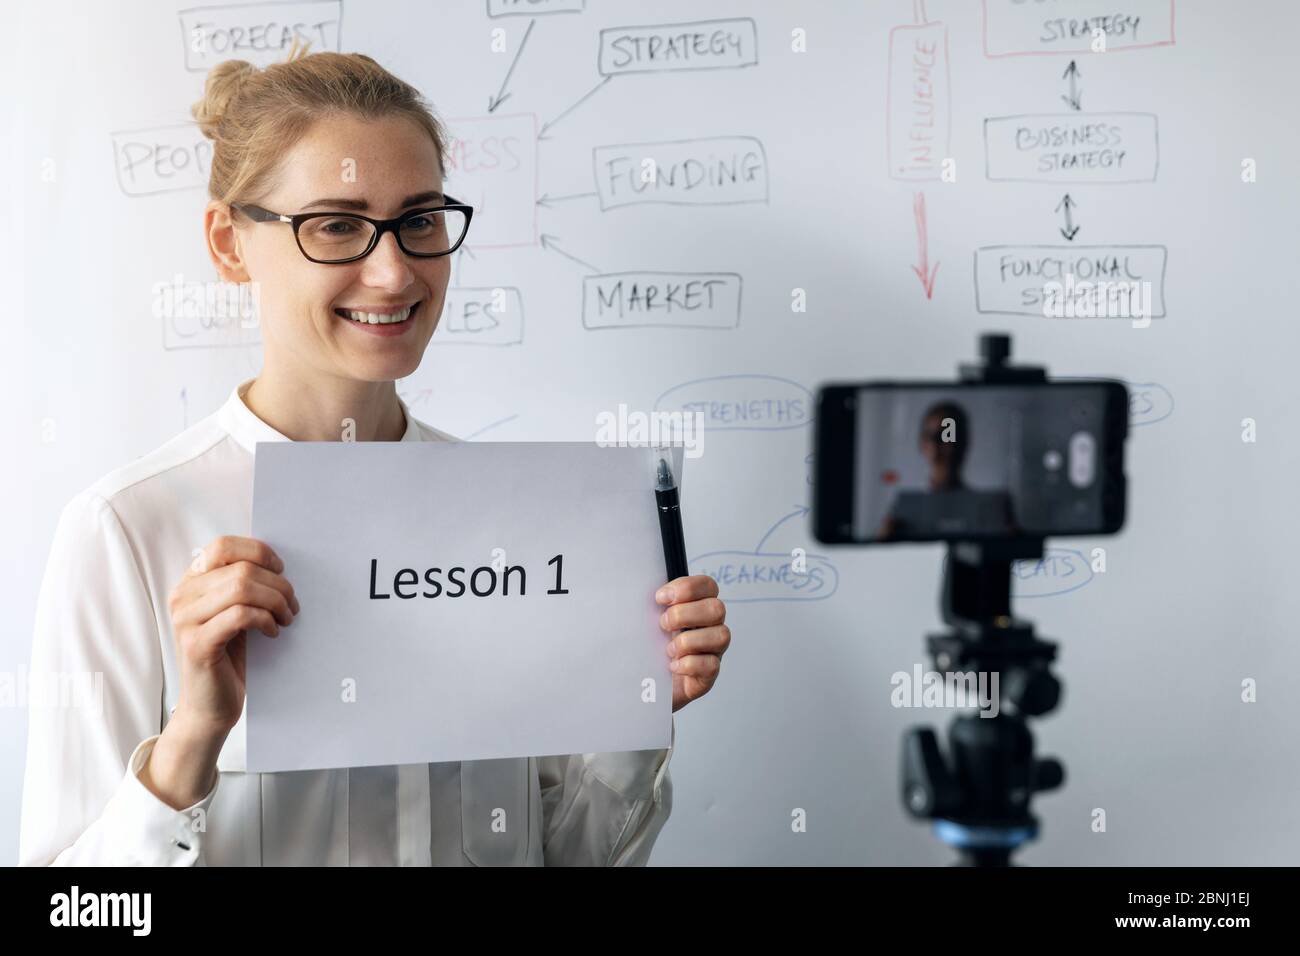 educación en línea, seminario web y el concepto de vlog empresarial - mujer enseñando y grabando vídeo con el teléfono en frente de la pizarra Foto de stock